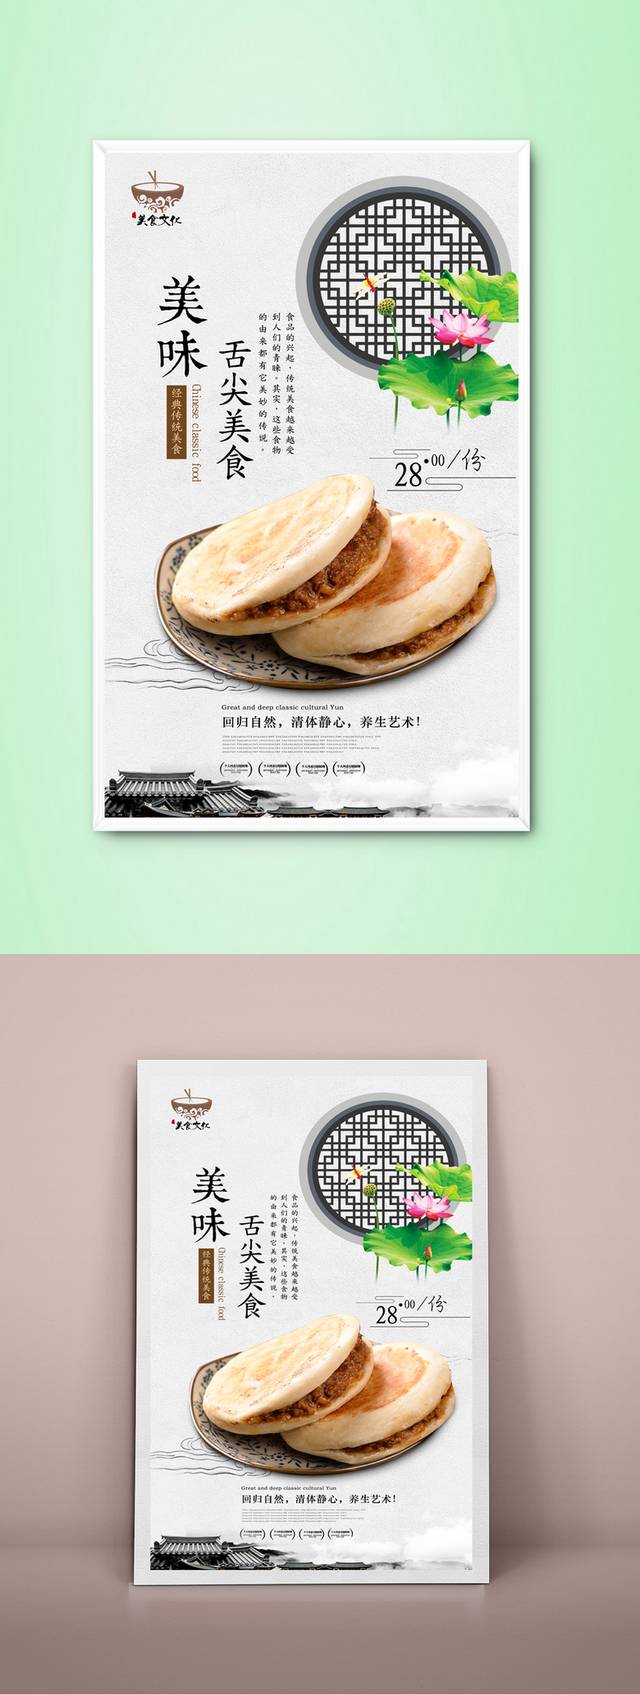 原创肉夹馍美食促销海报设计